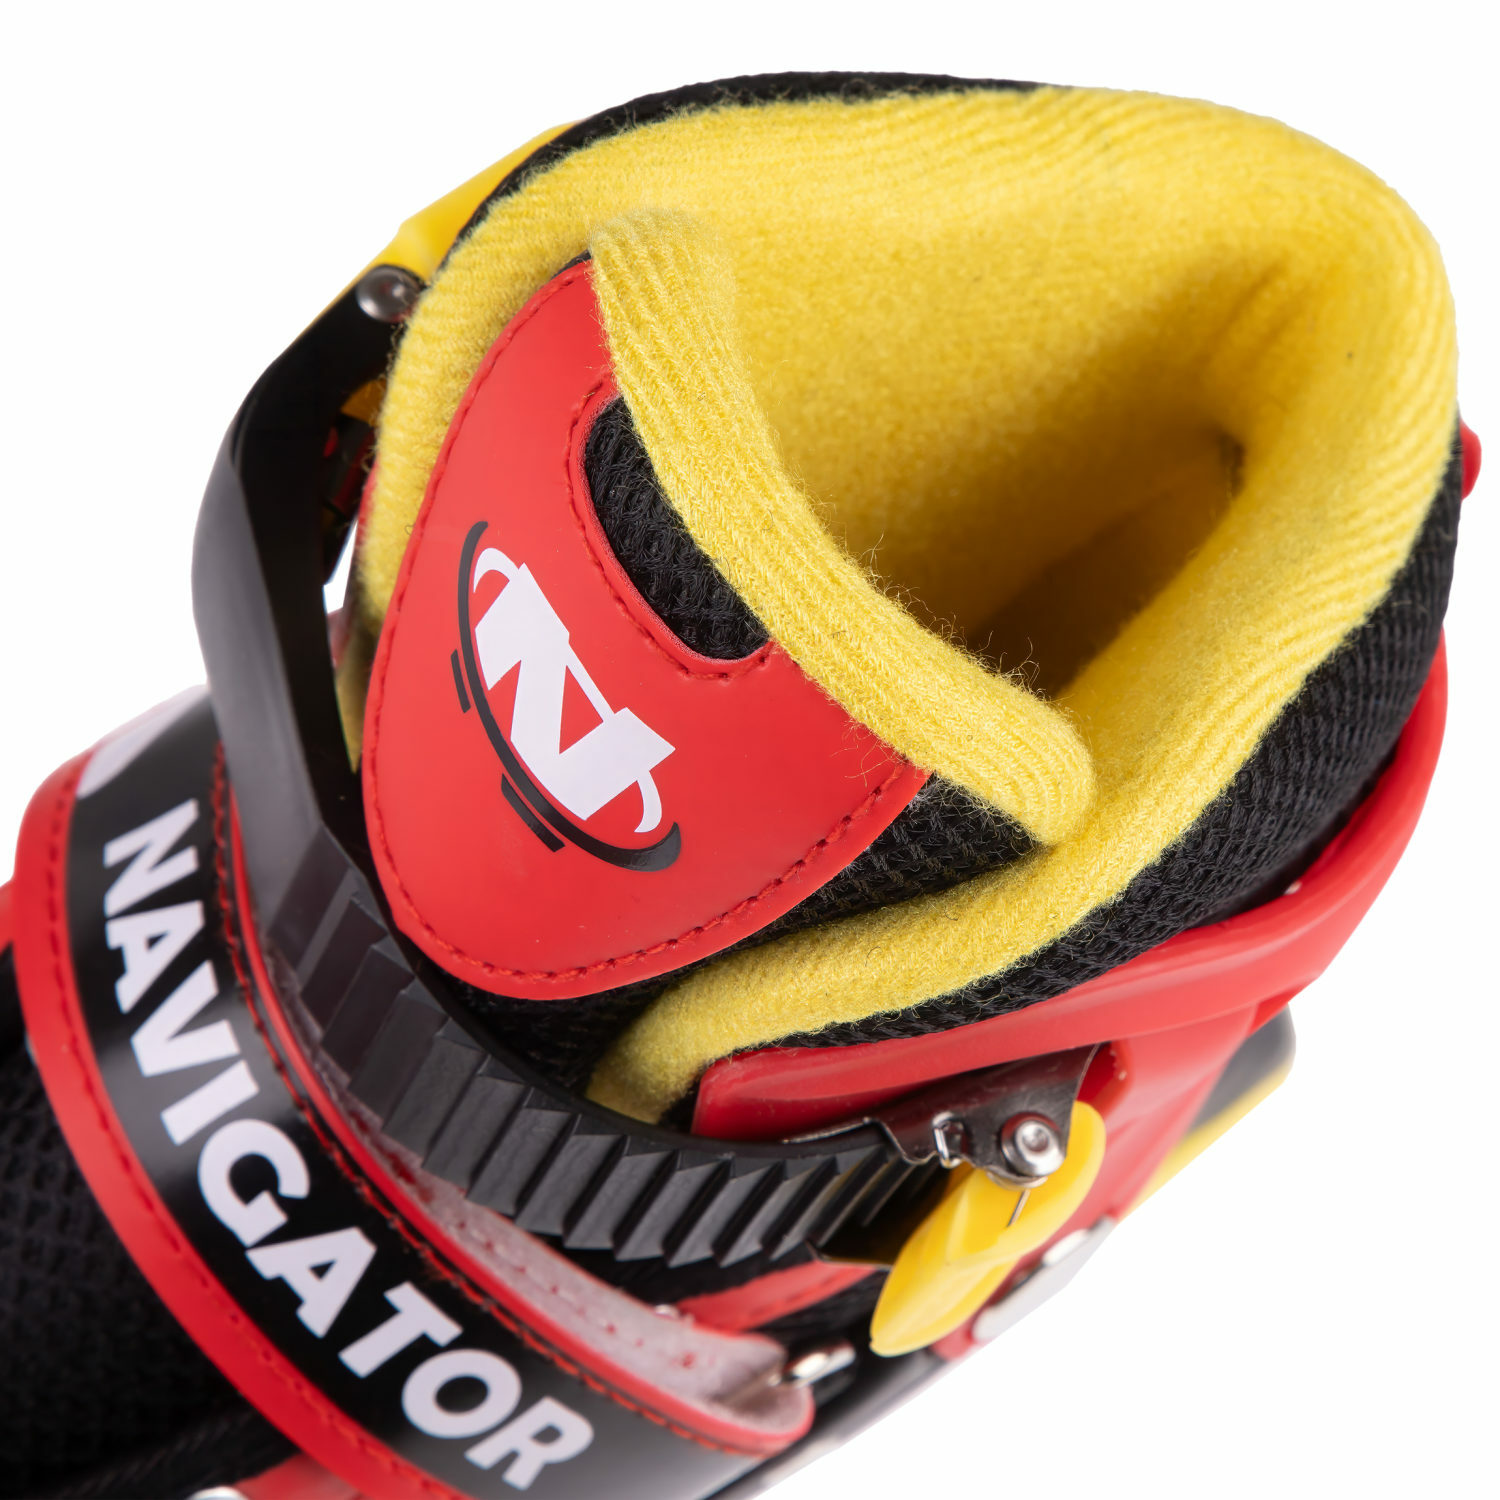 Ролики Navigator детские раздвижные 30 - 33 размер с защитой и шлемом красный - фото 19